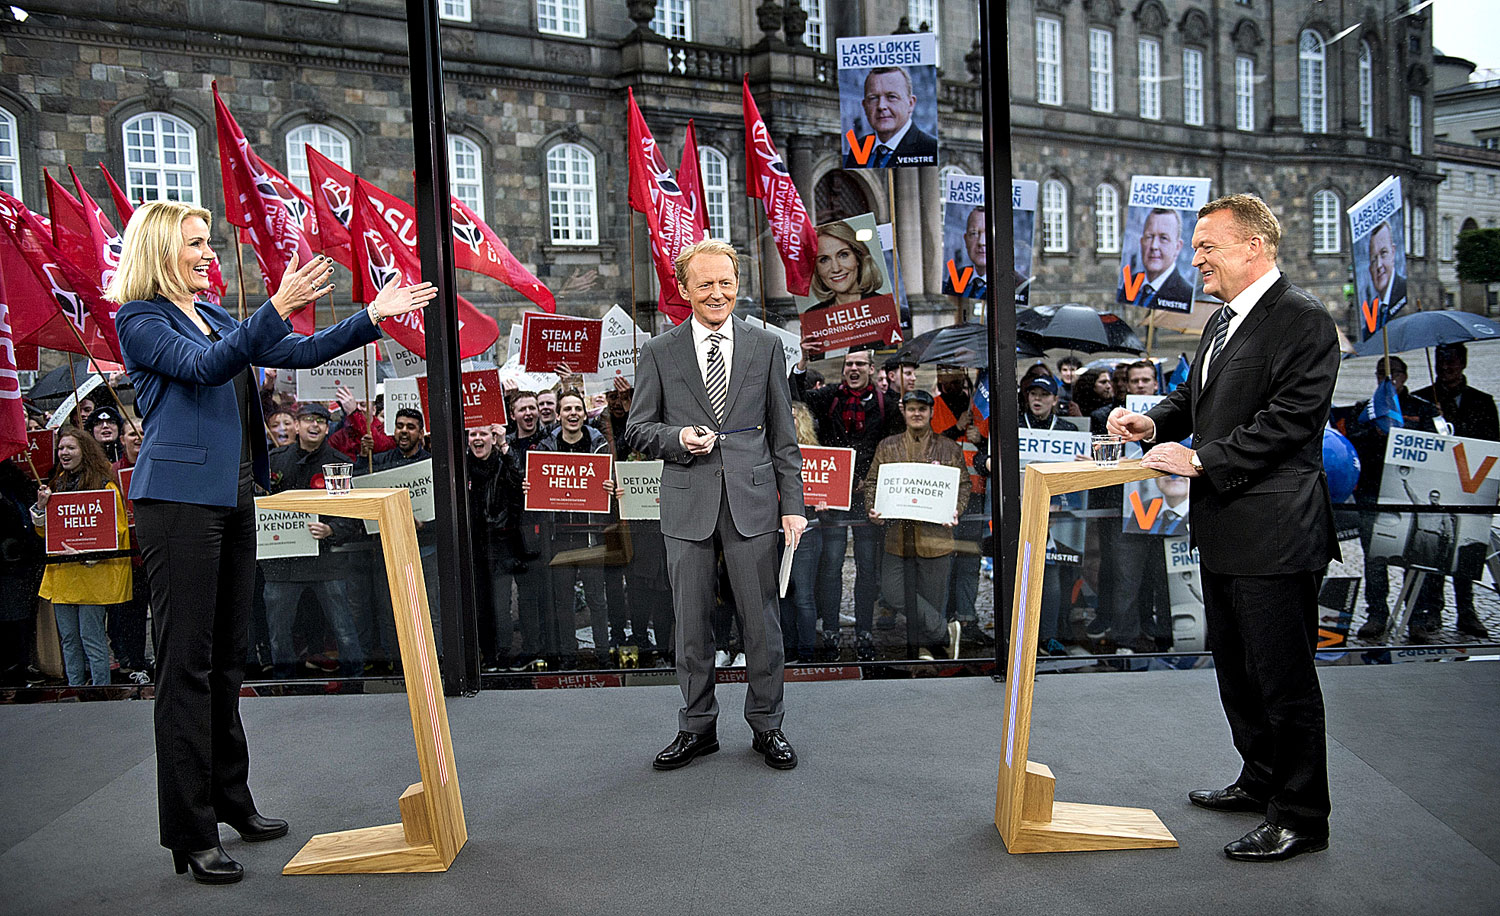 Helle Thorning-Schmidt és Lars Rasmussen a parlament előtt rendezett tévévitán 